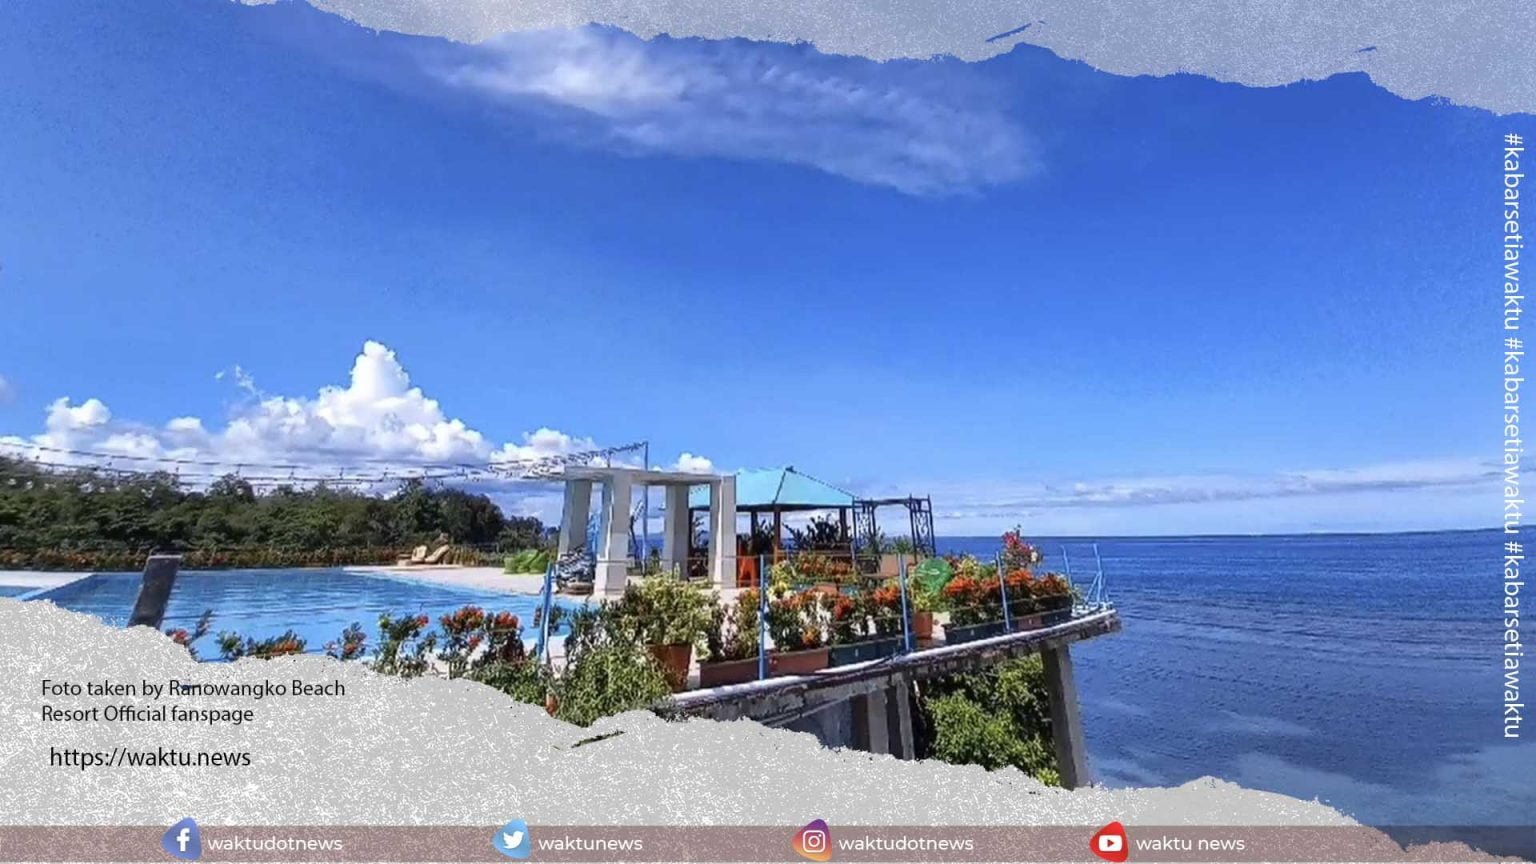 Ranowangko Beach Resort Minahasa yang Memukau